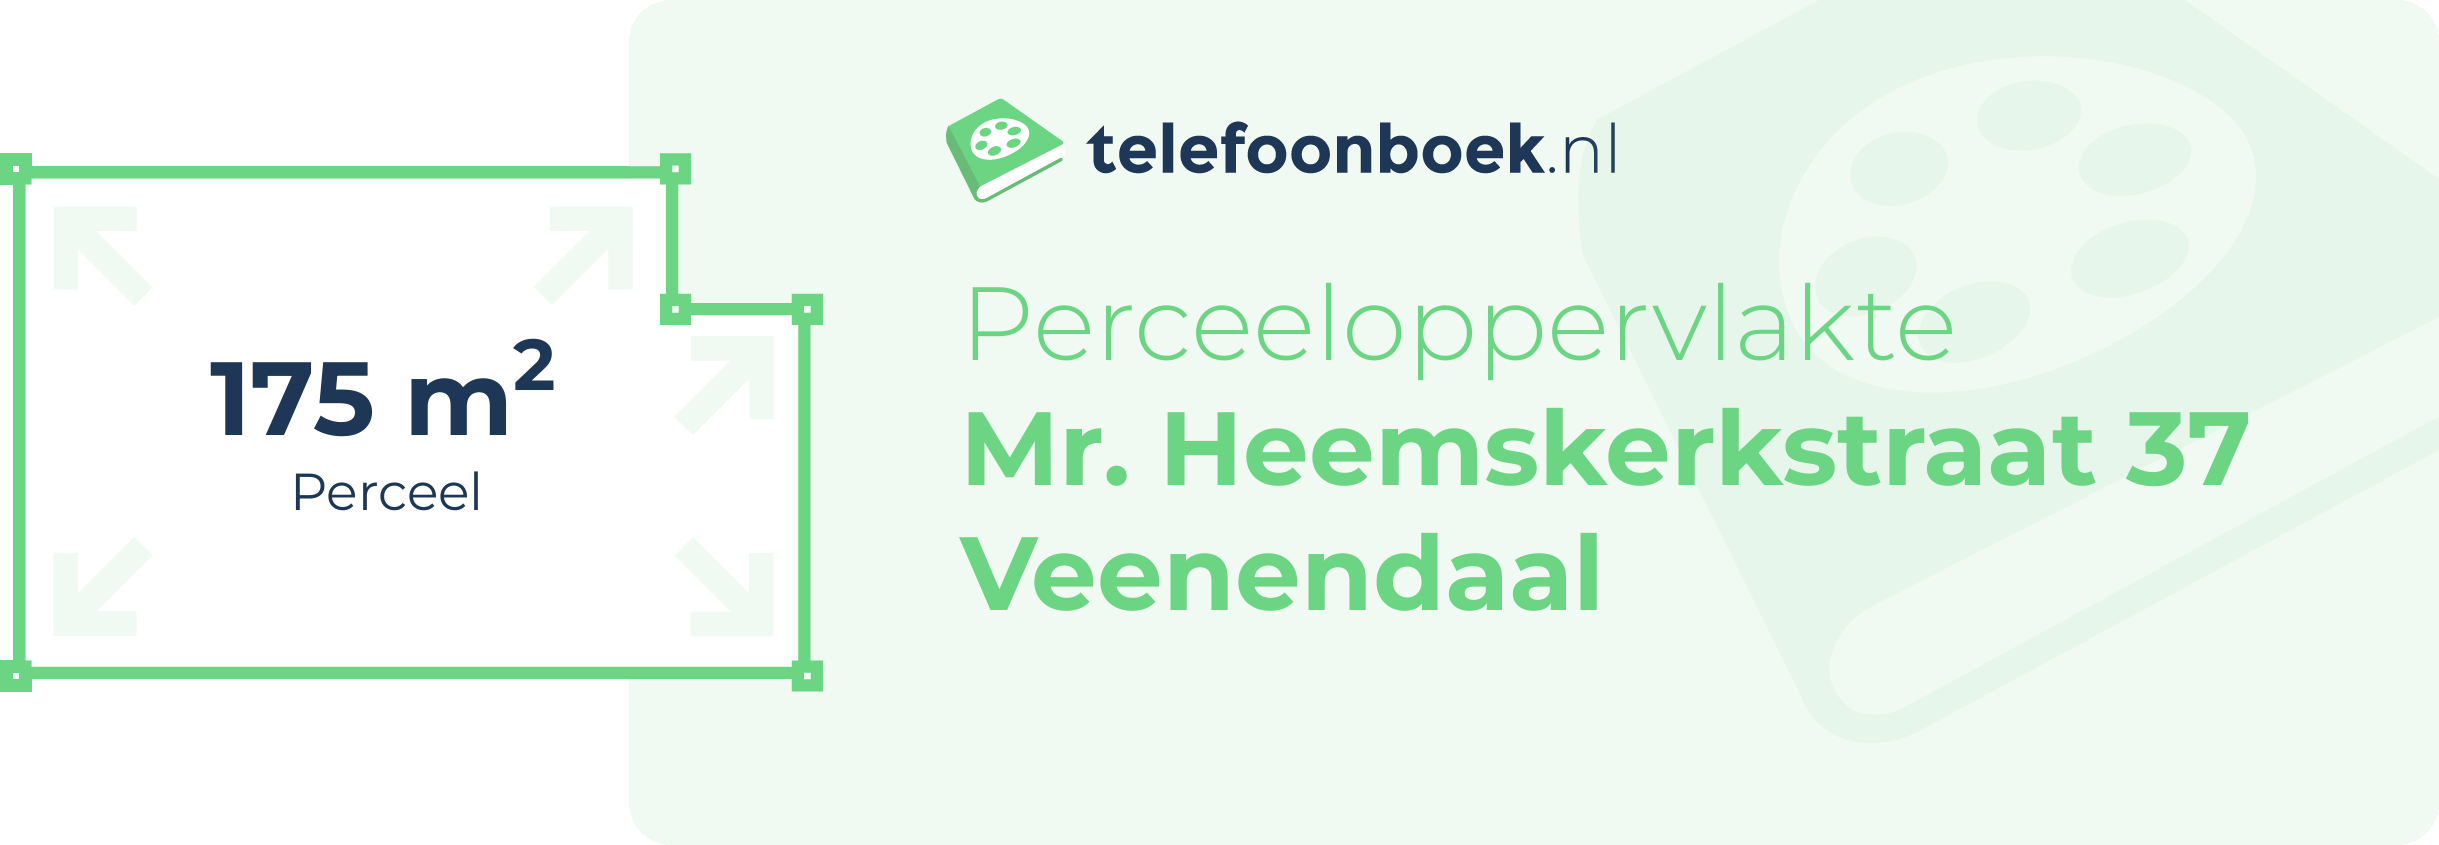 Perceeloppervlakte Mr. Heemskerkstraat 37 Veenendaal